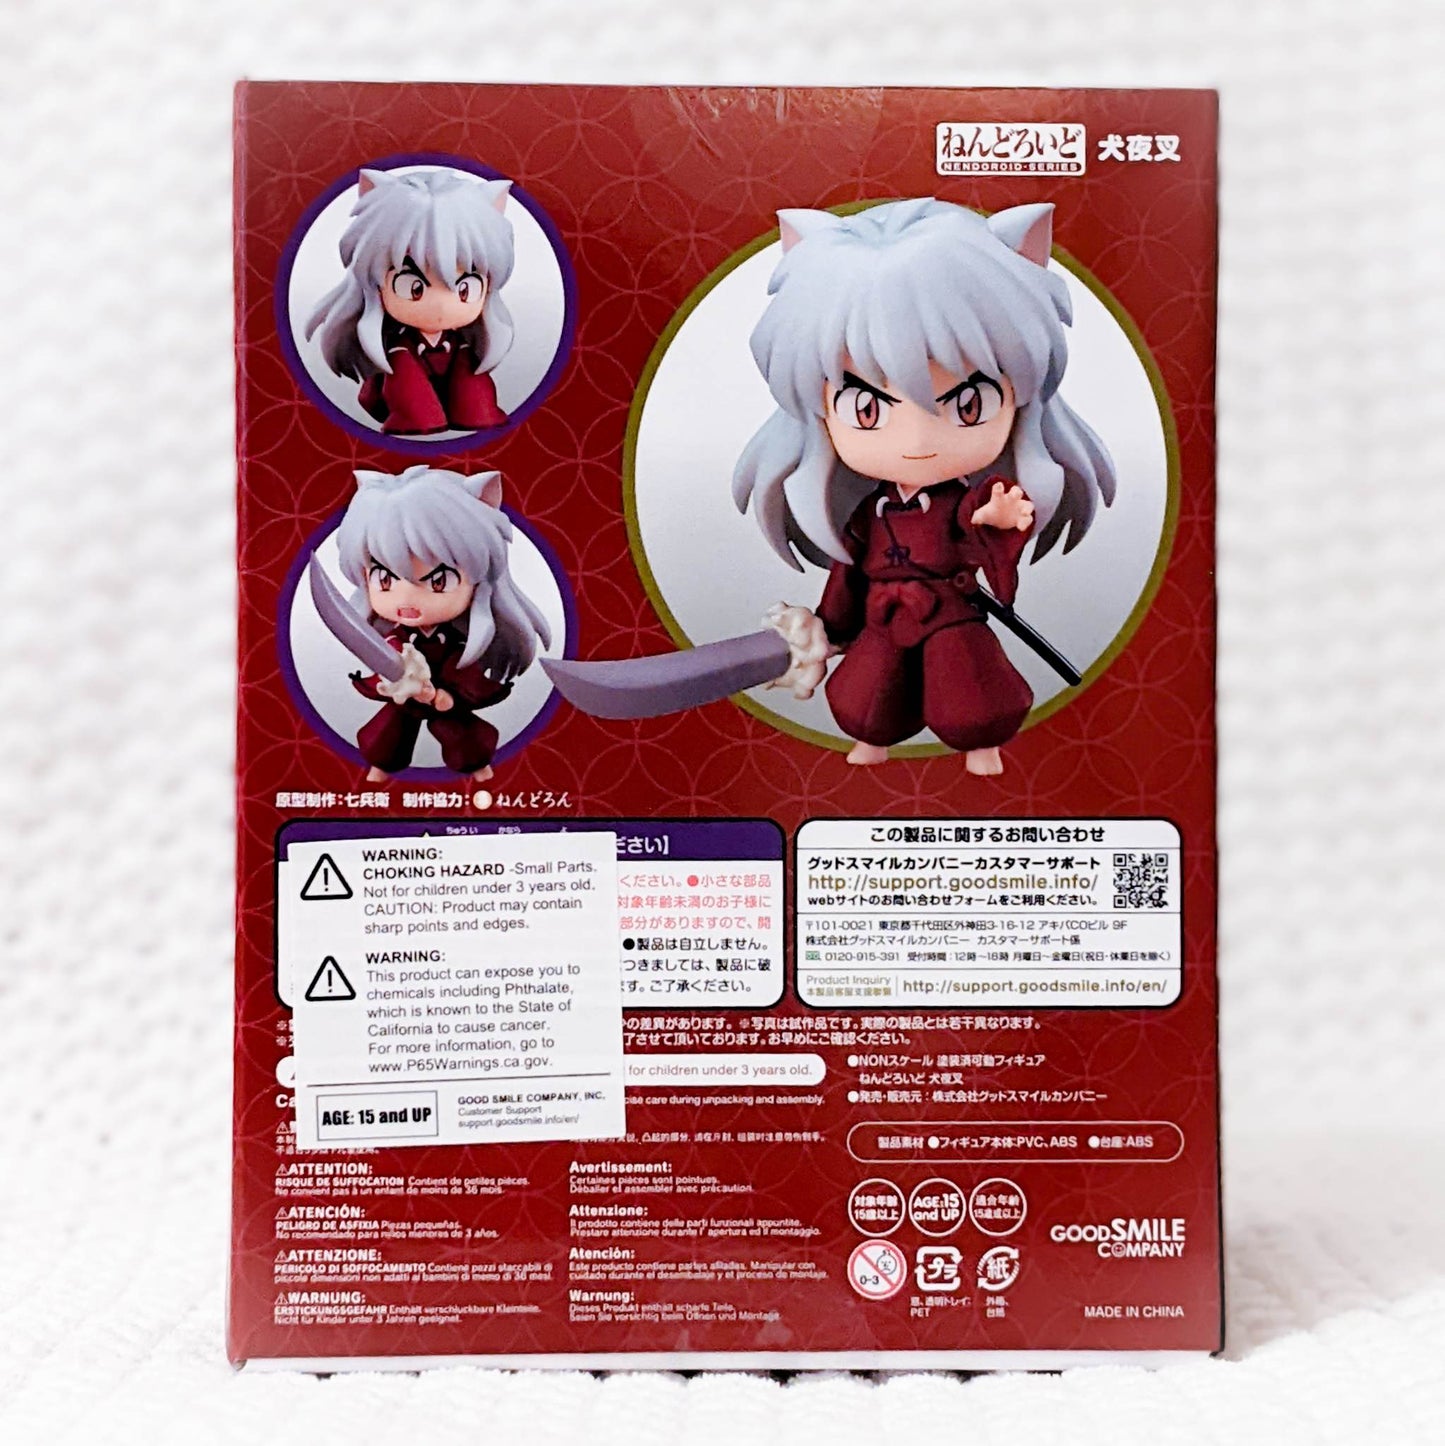 Inuyasha - Nendoroid Anime Figure 1300 Good Smile Company